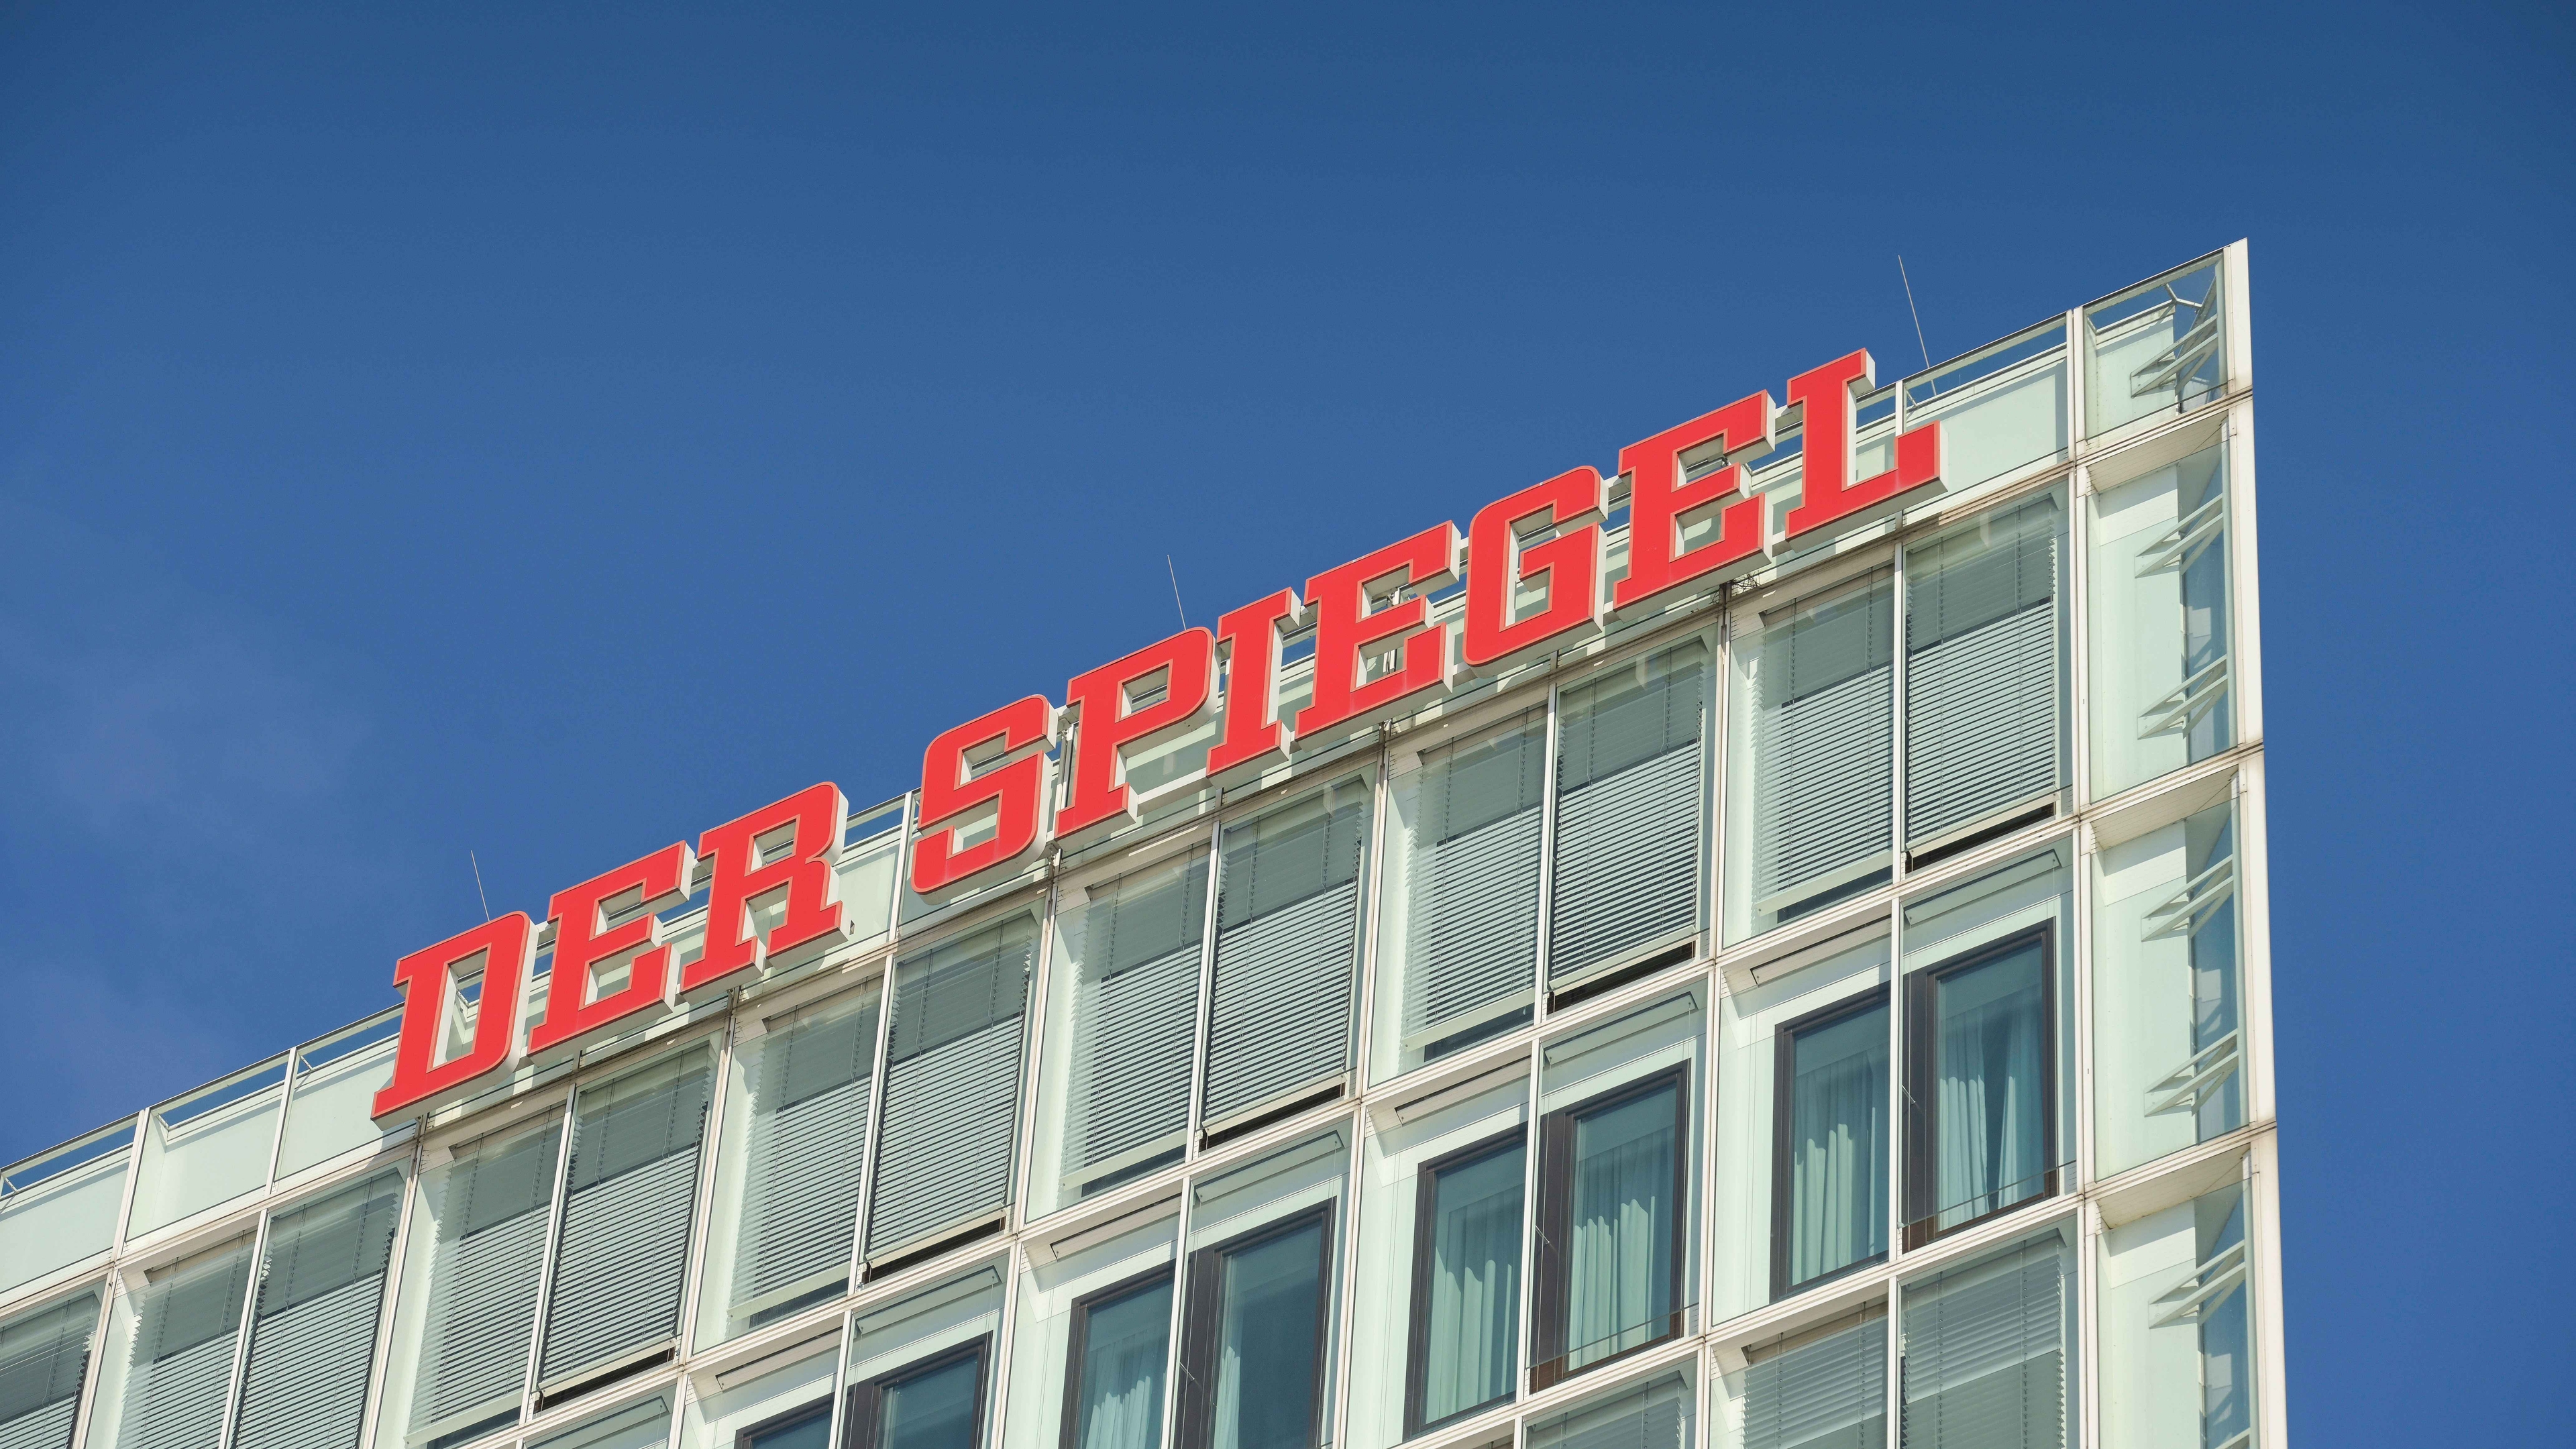 Print und Digitalvermarktung bricht bei der Spiegel-Gruppe 2022 zweistellig ein